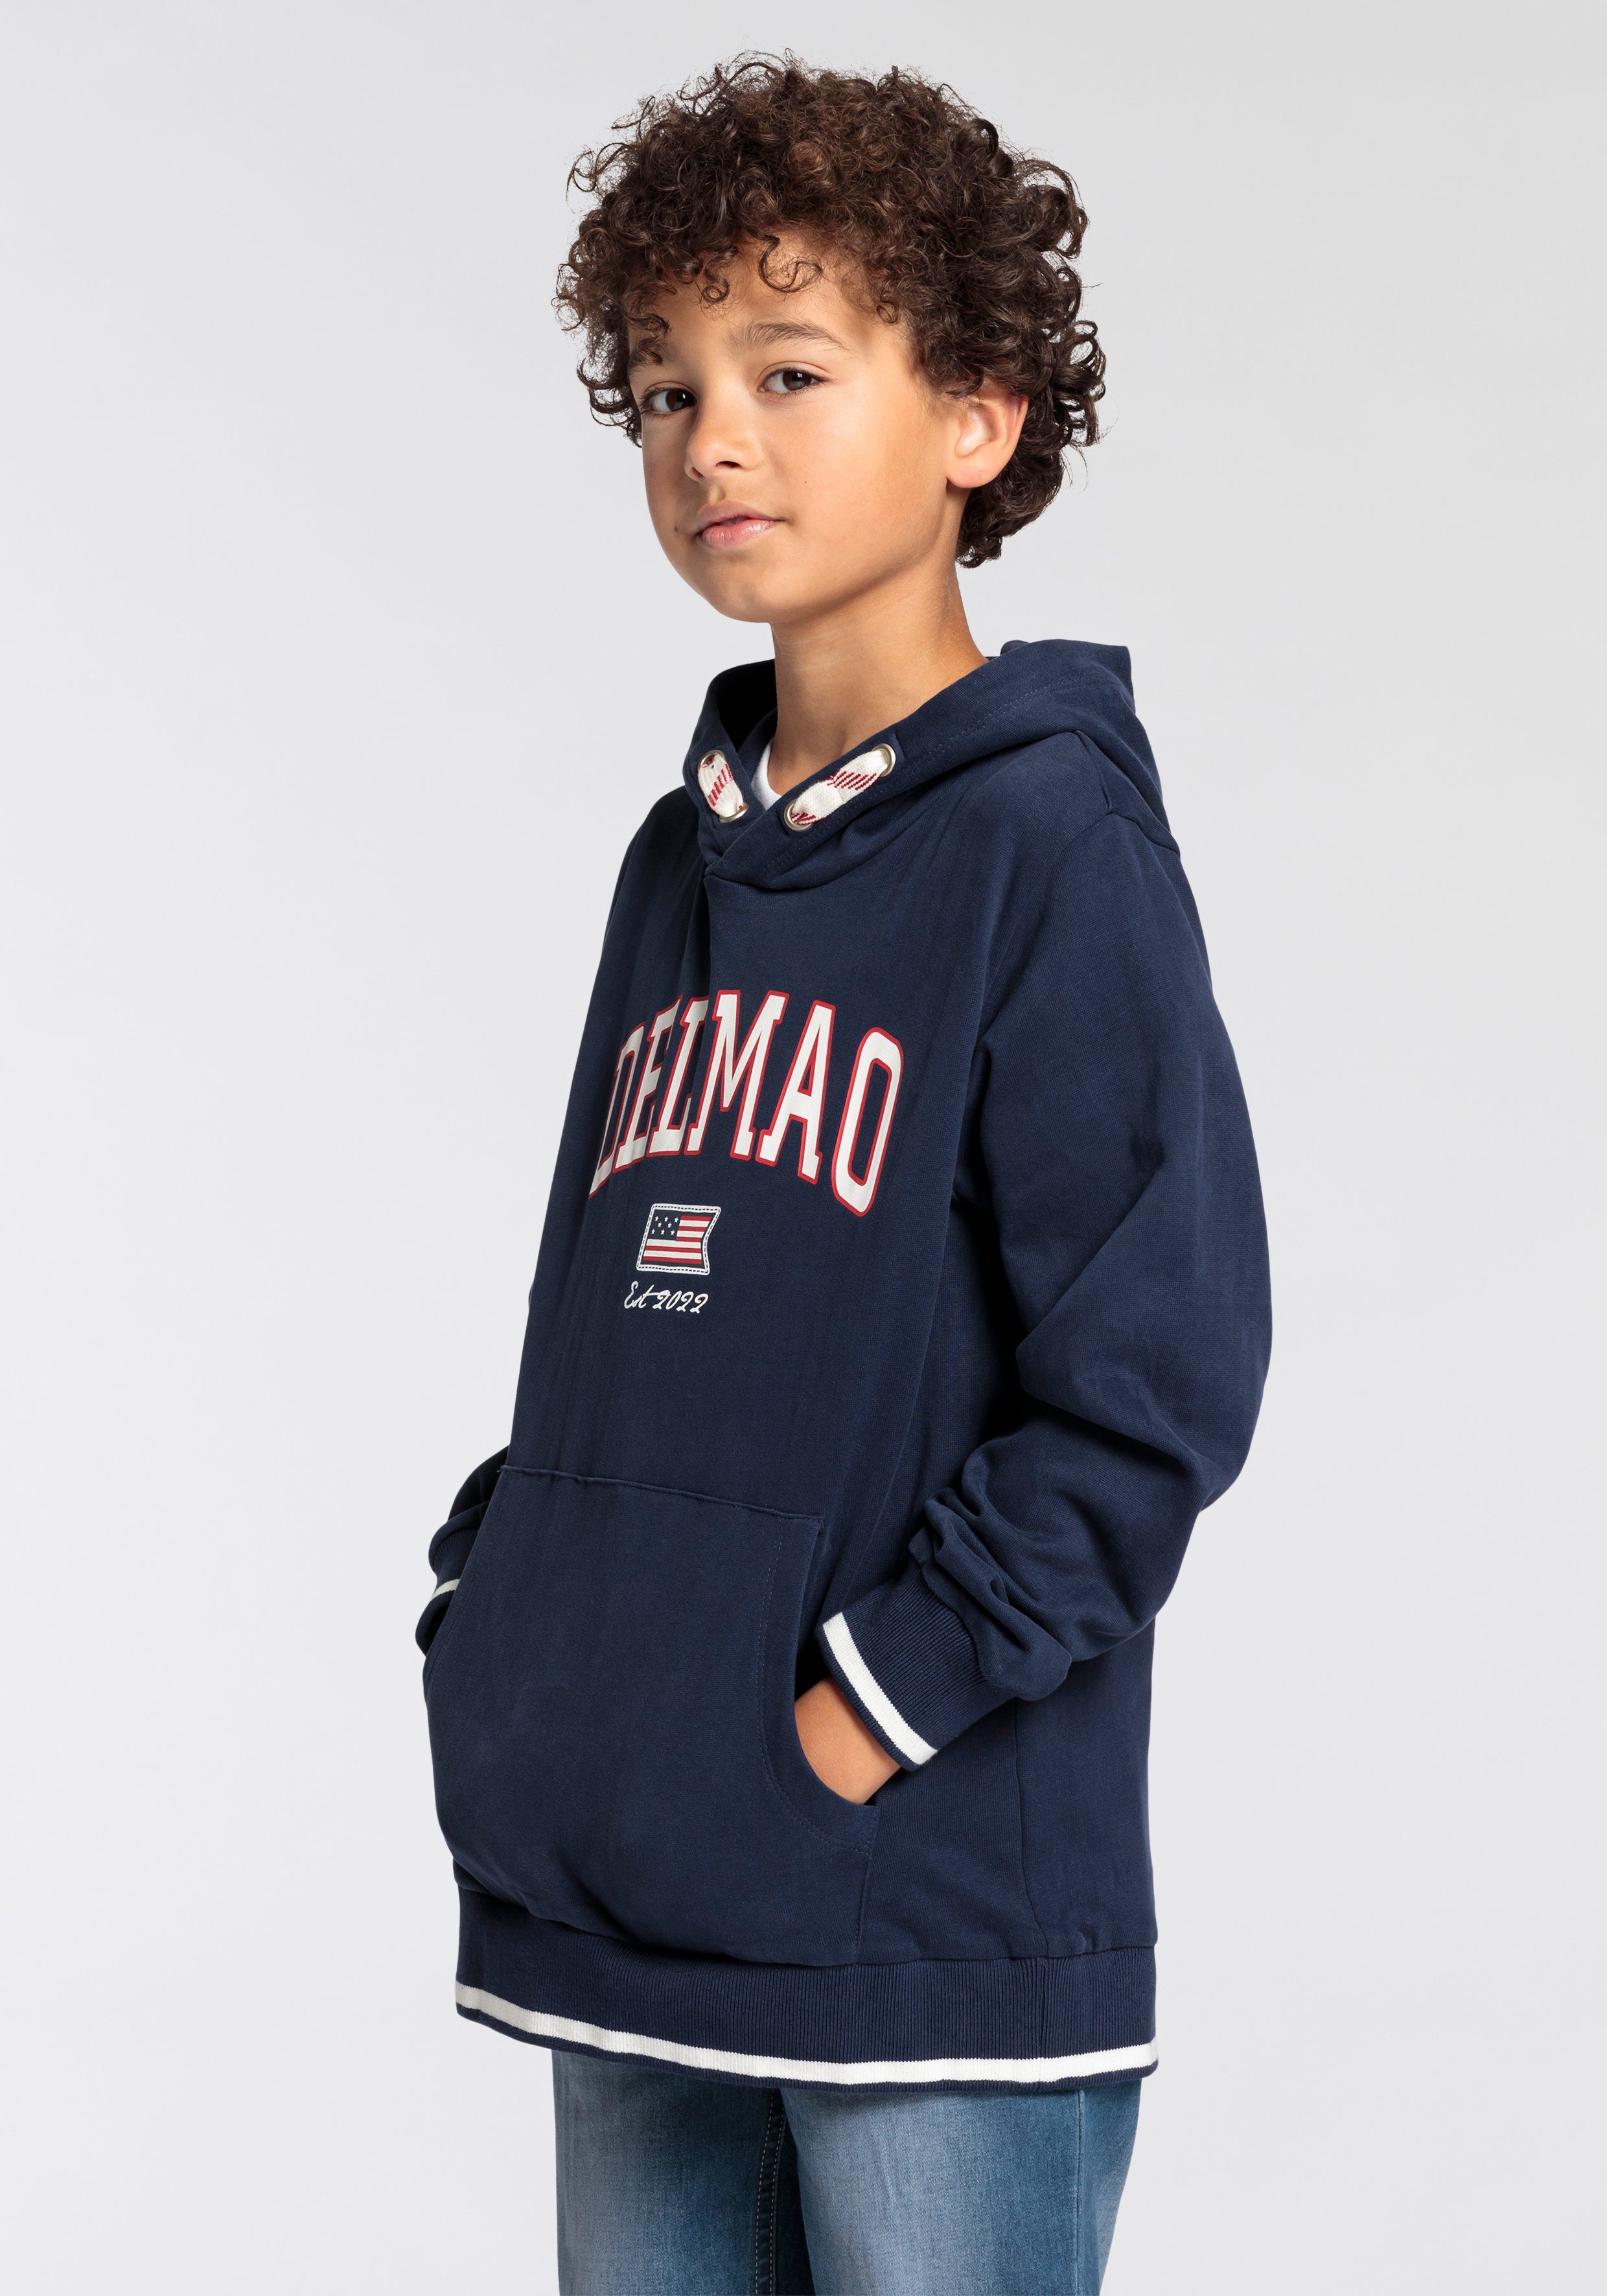 DELMAO Logo-Sweathirt Delmao der Jungen, Marke neuen für Kapuzensweatshirt